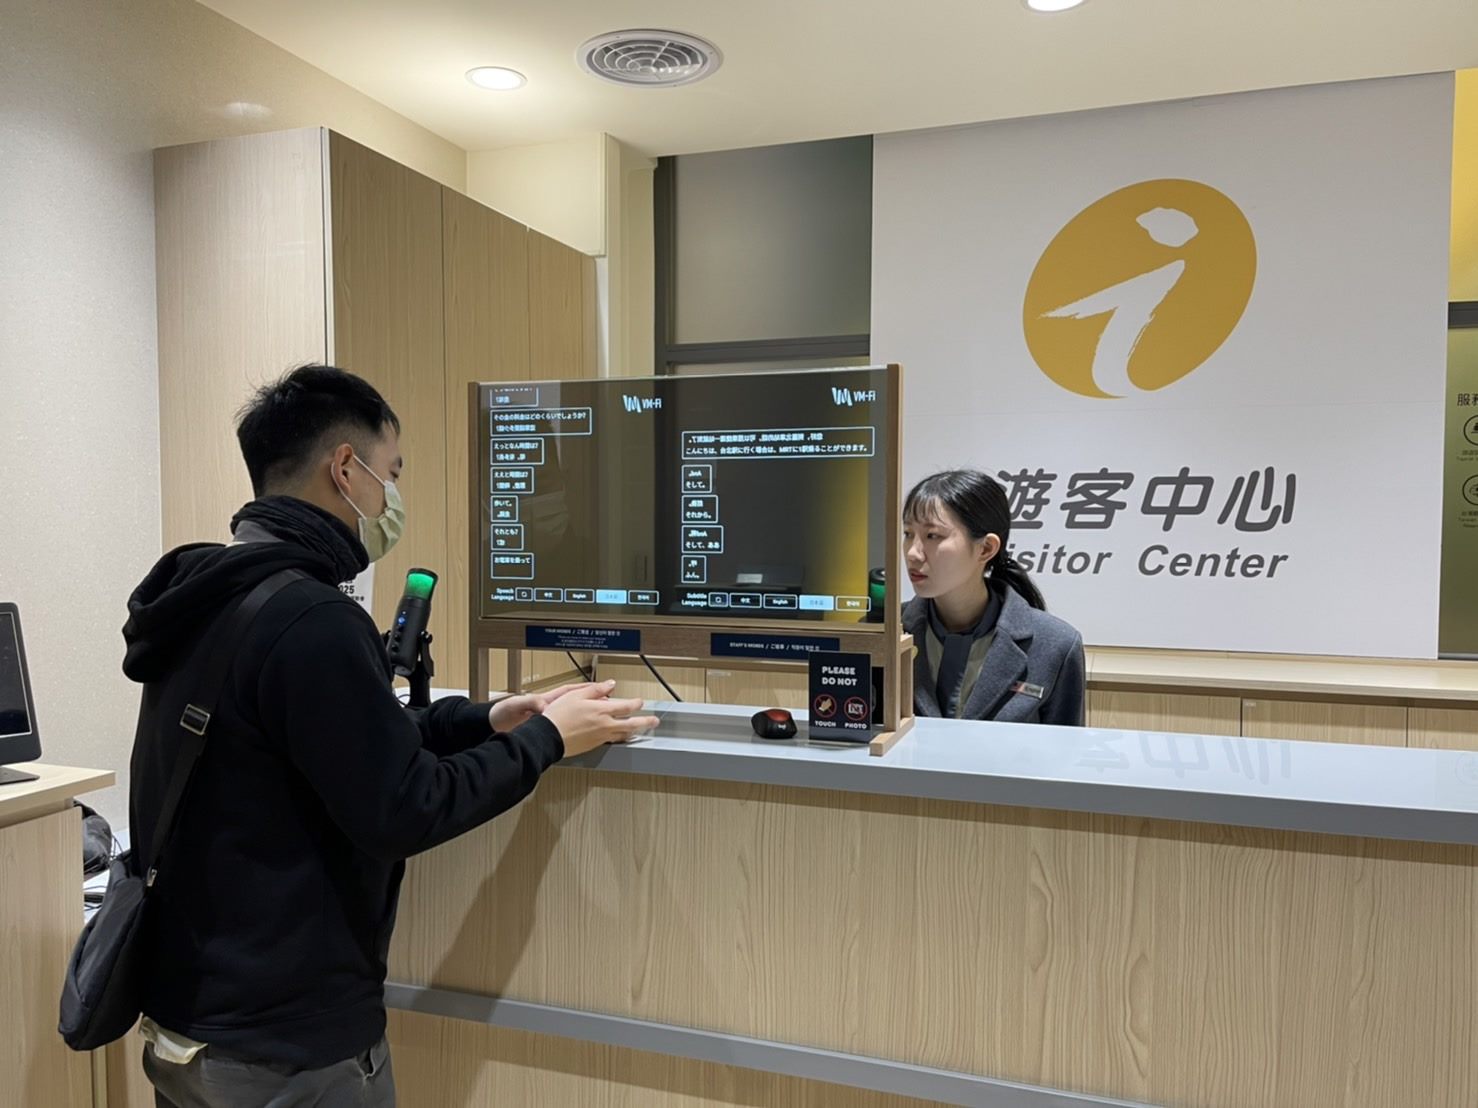 西門町遊客中心於台北燈節期間設置AI「智慧翻譯透明面板」即時翻譯服務，與外籍旅客面對面提供即時翻譯旅遊諮詢服務。